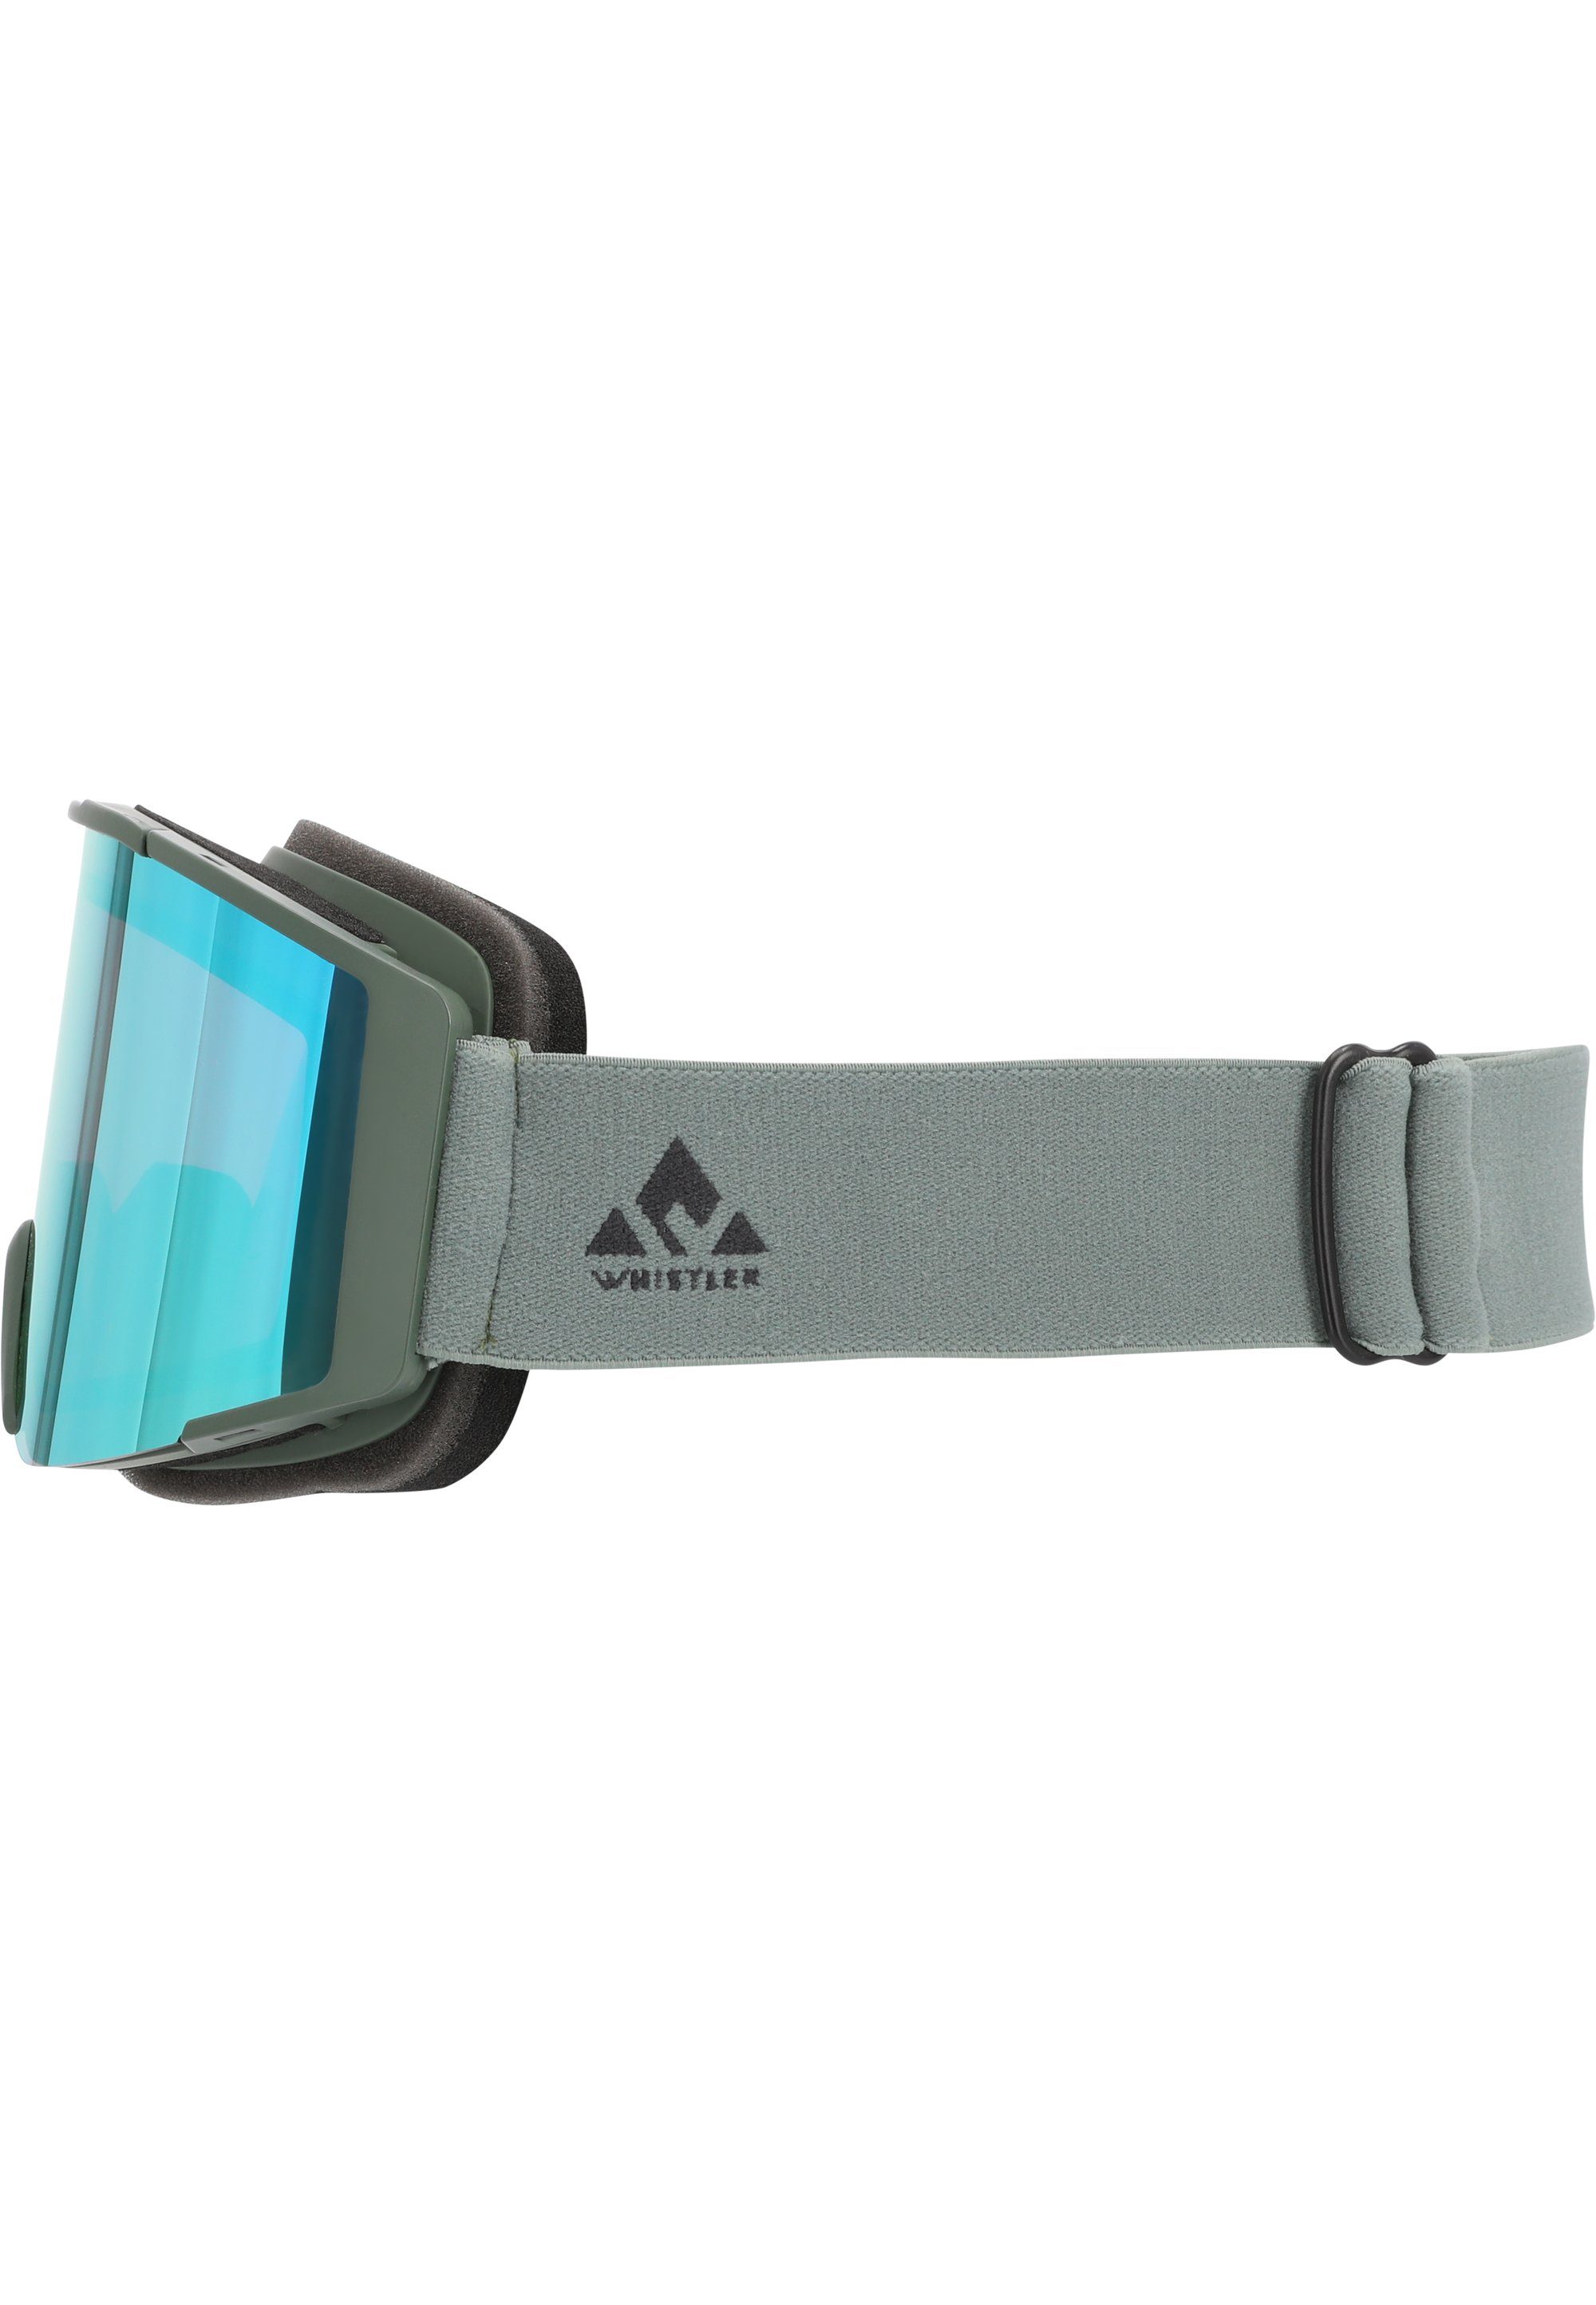 WHISTLER Skibrille grün WS6200, Panorama-Gläsern mit